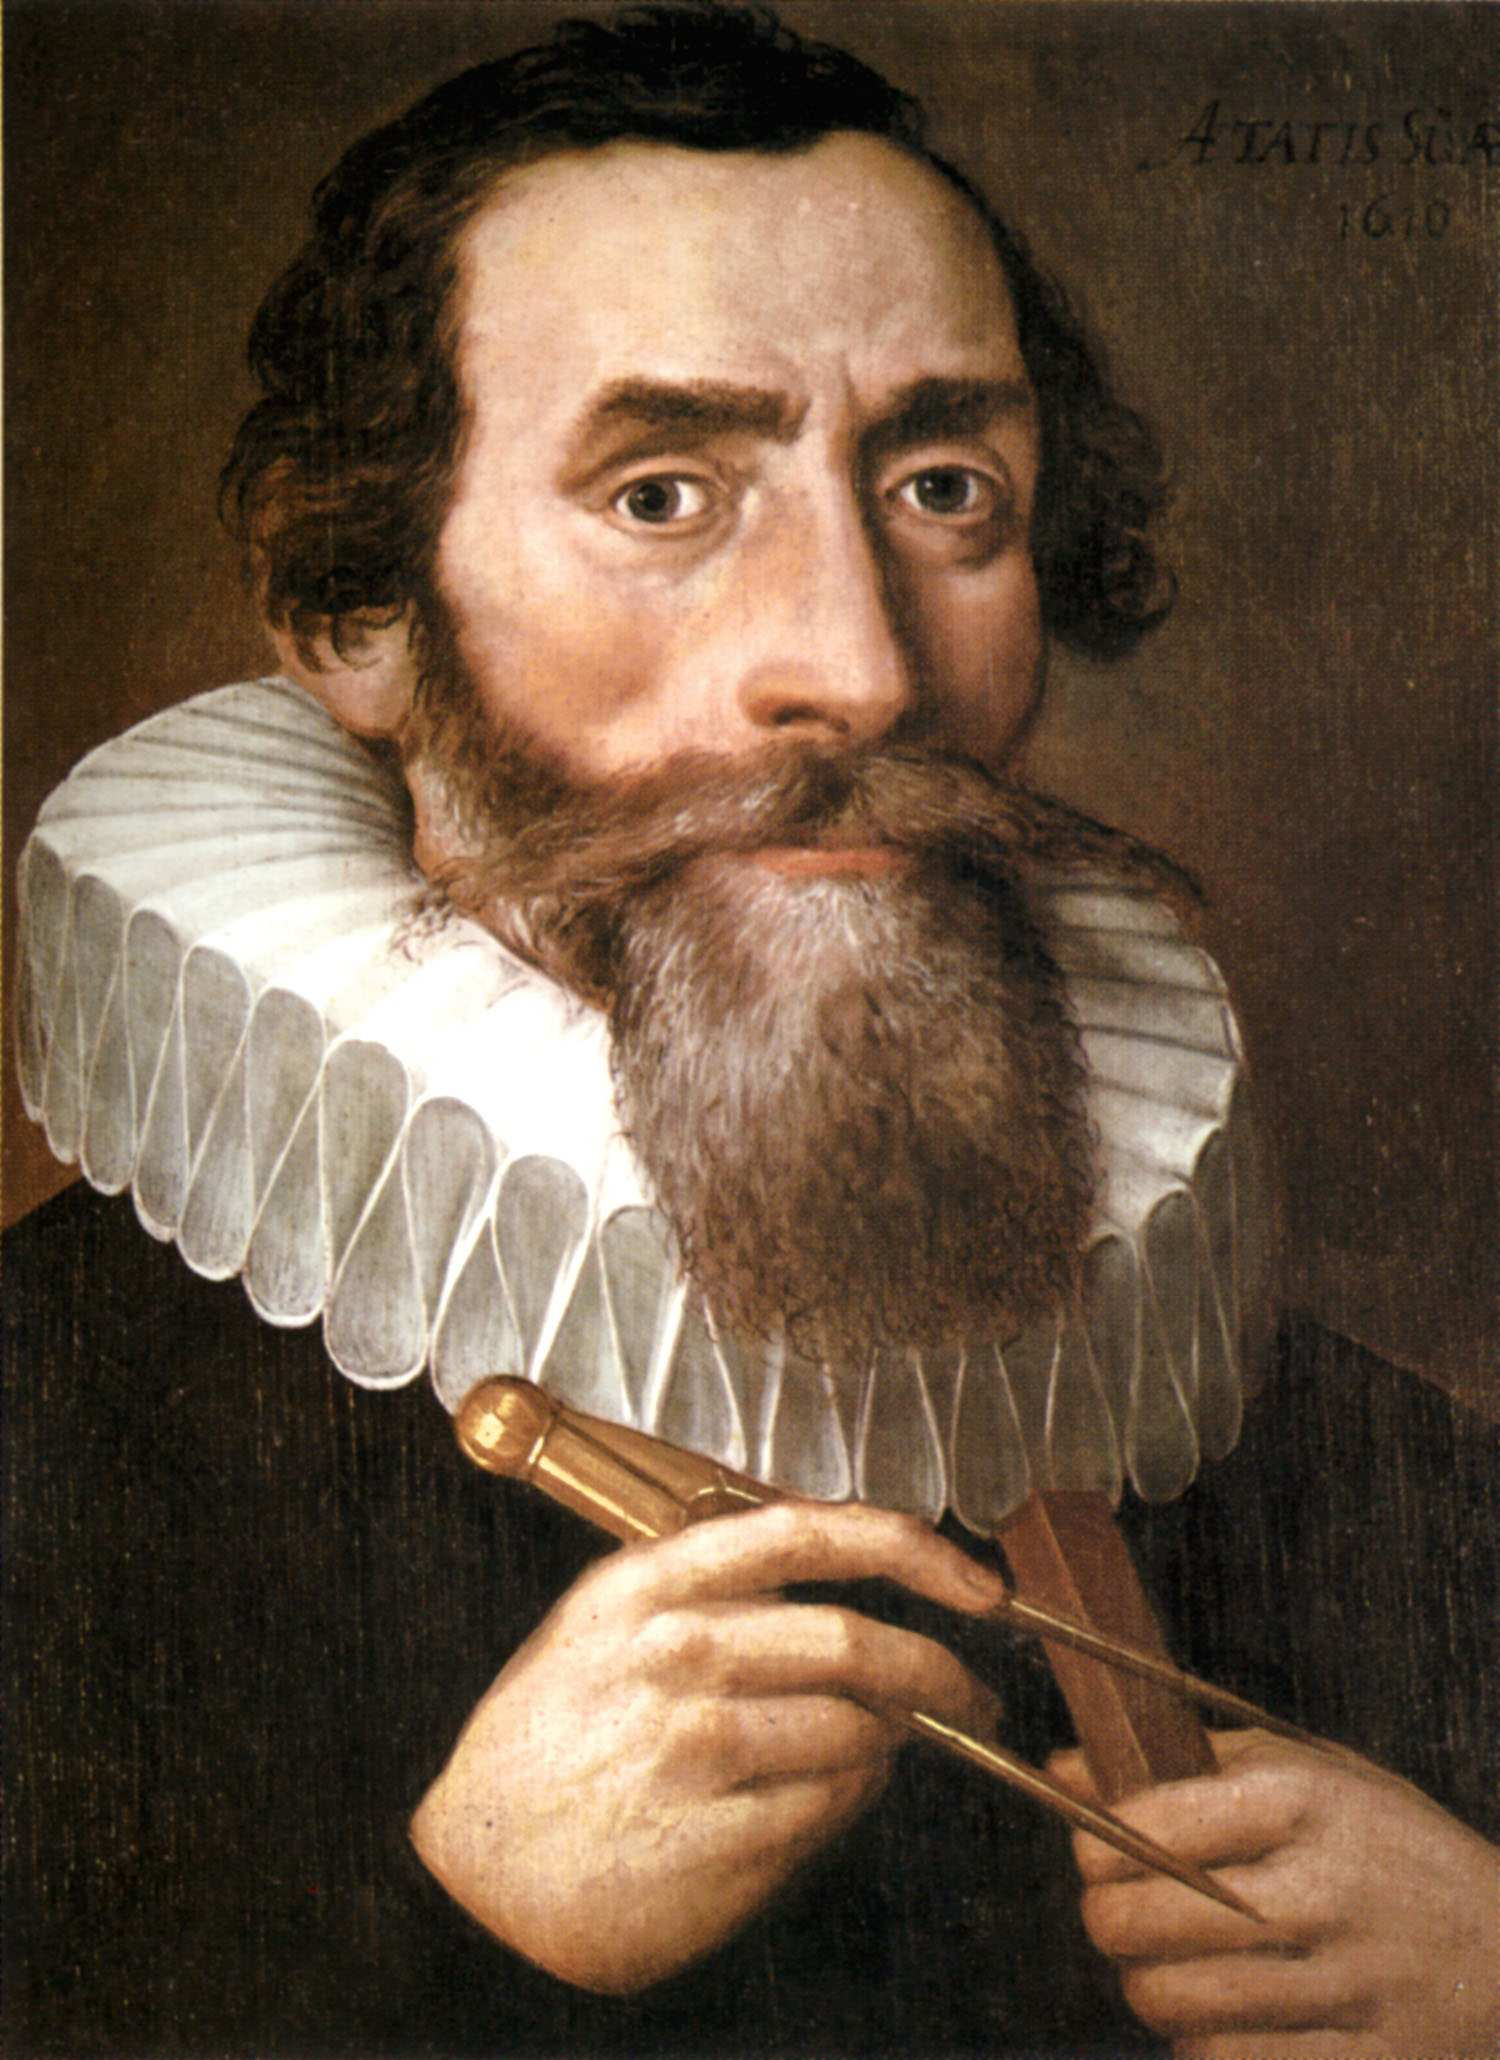 2009 war das Jahr der Astronomie Das Jahr 1609 ist eines der wichtigsten für die Astronomie: Johannes